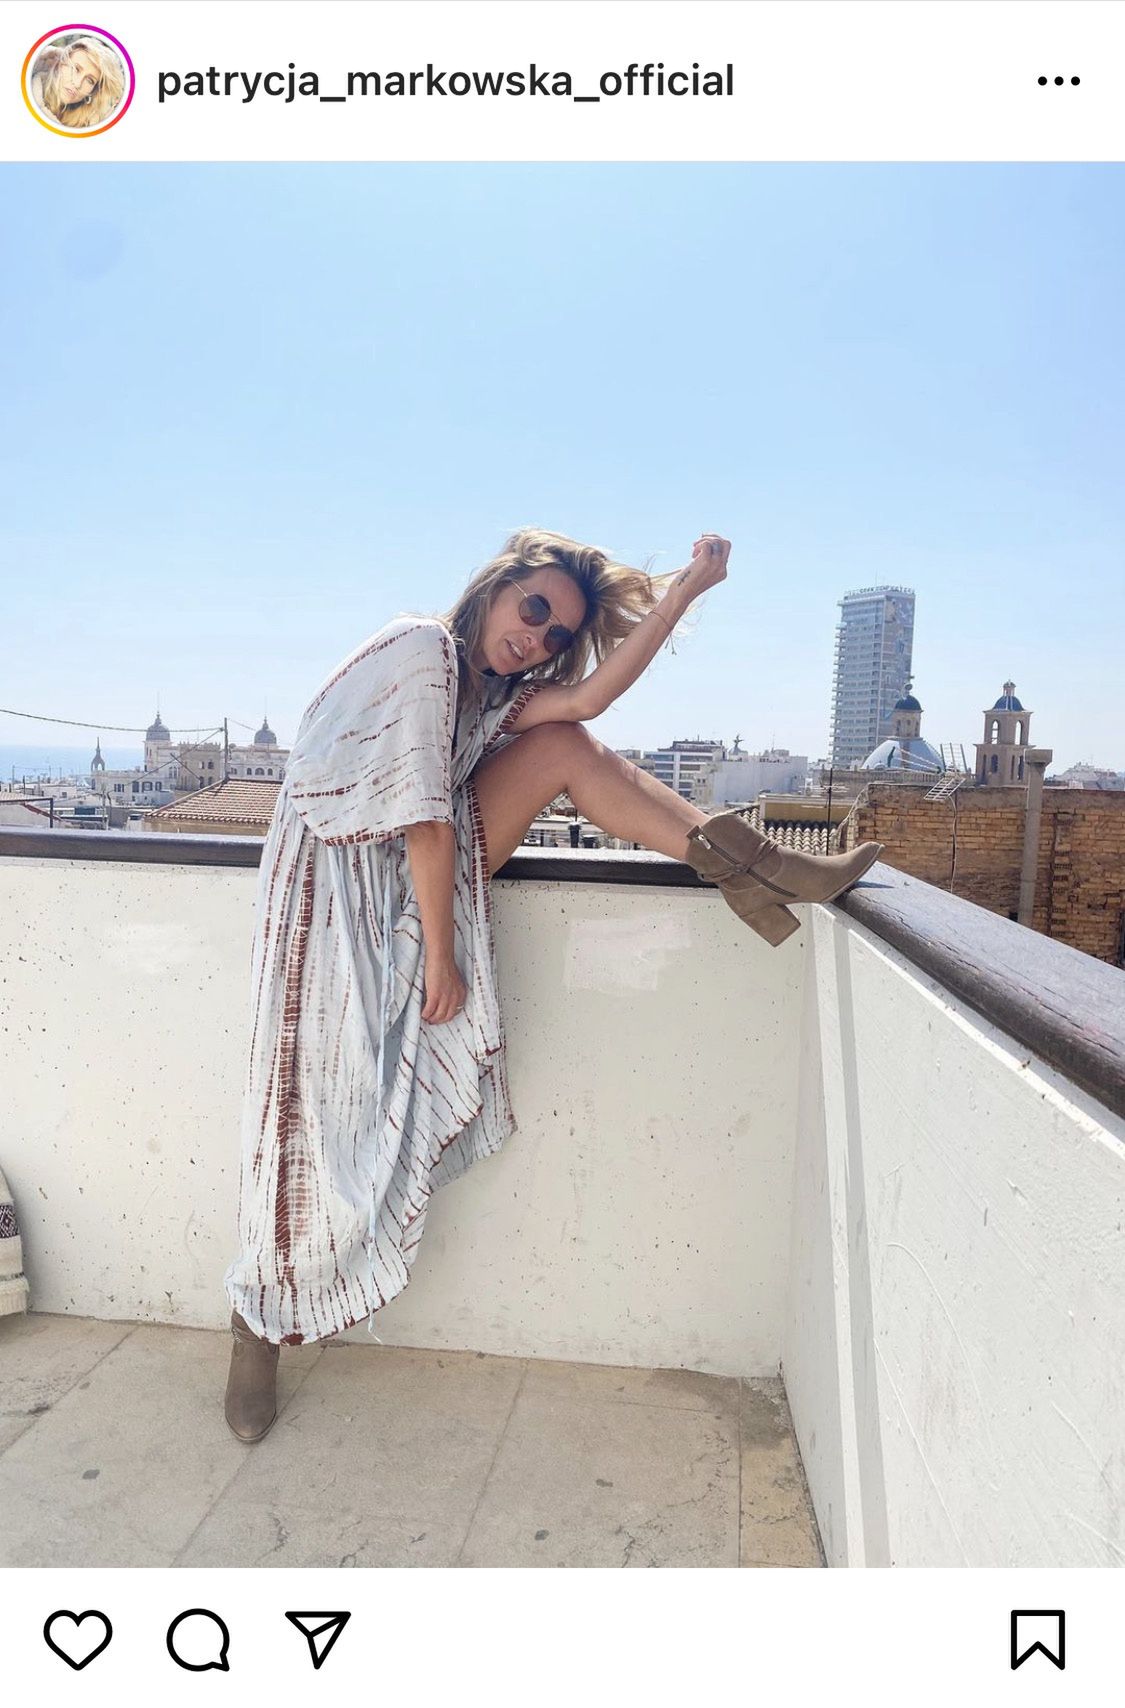 Patrycja Markowska w botkach w stylu boho, Instagram.com/patrycja_markowska_official